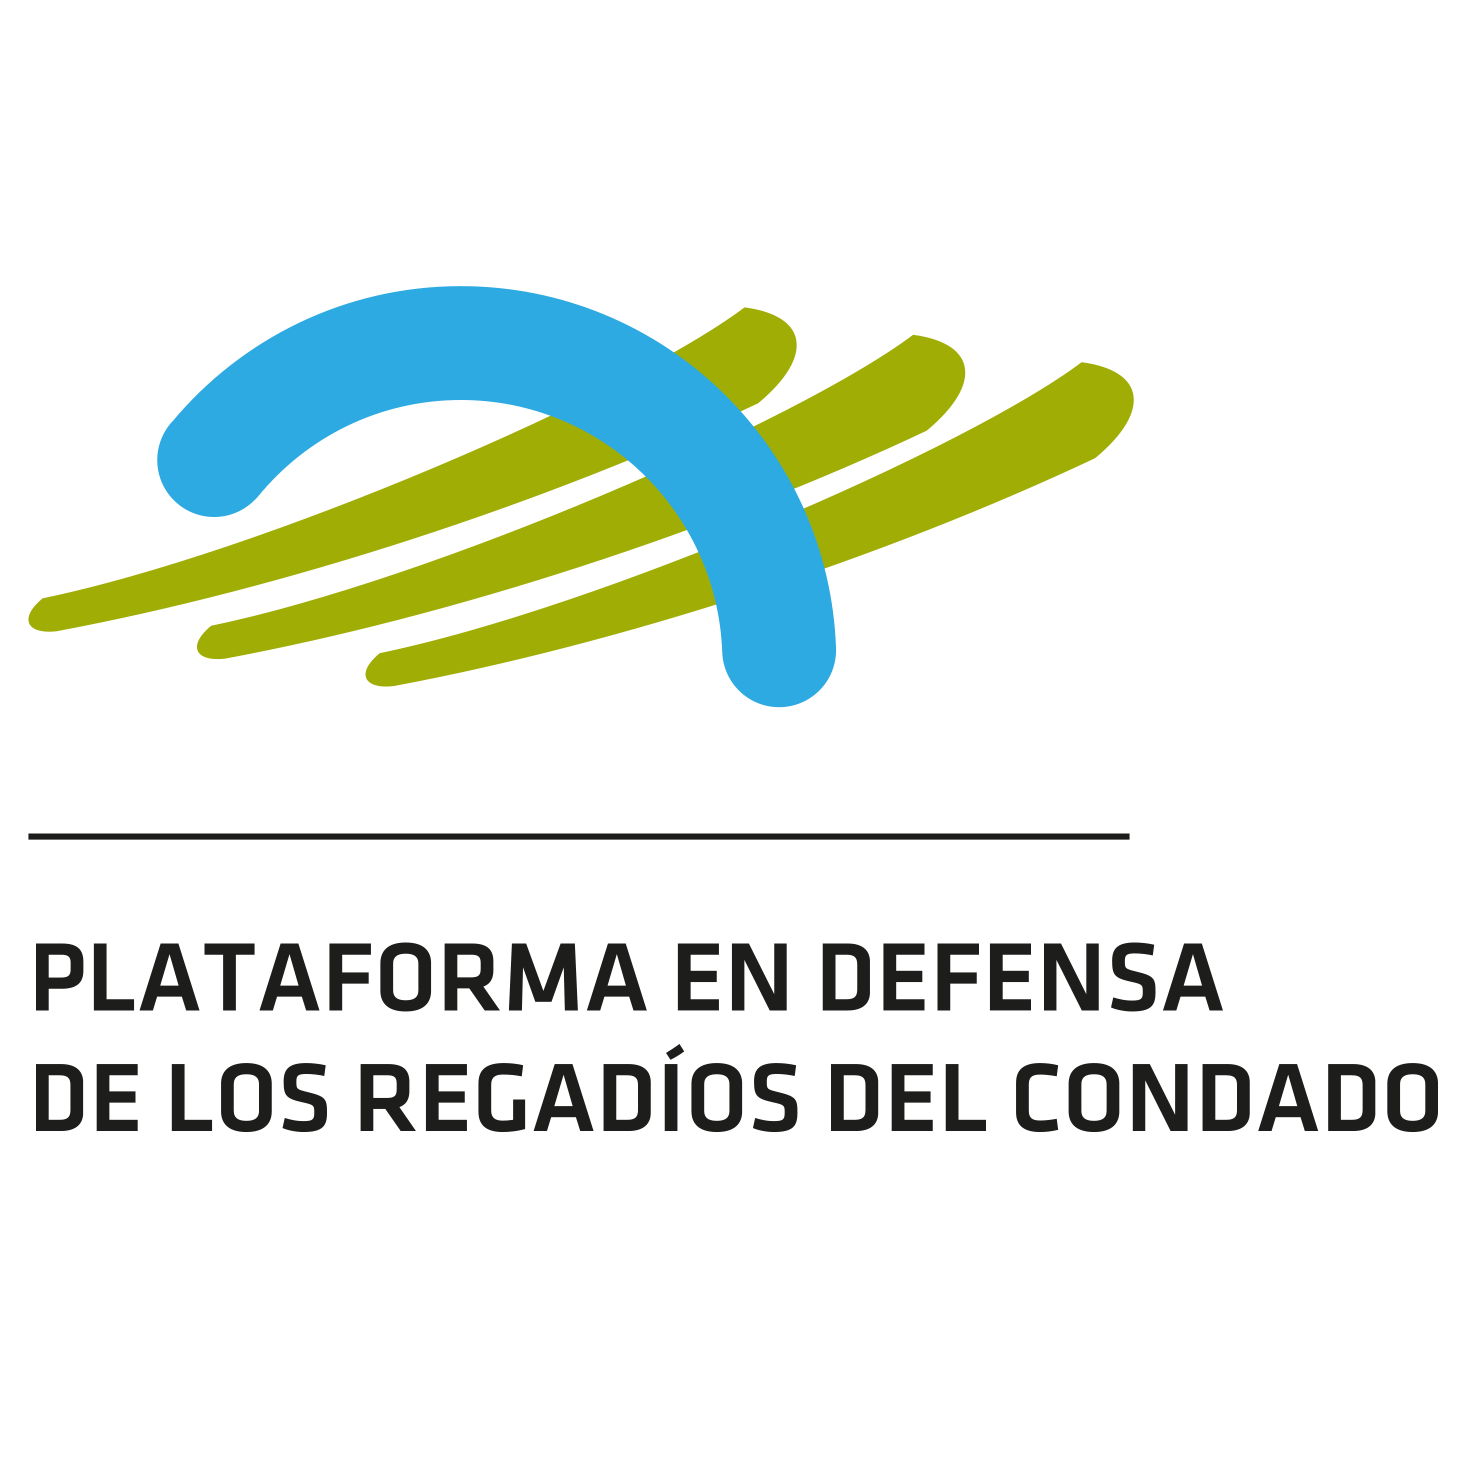 La Plataforma en Defensa de los Regadíos del Condado defiende la llegada de agua superficial para la comarca Doñana. Sin agricultura, perdemos todos. ¡Agua ya!